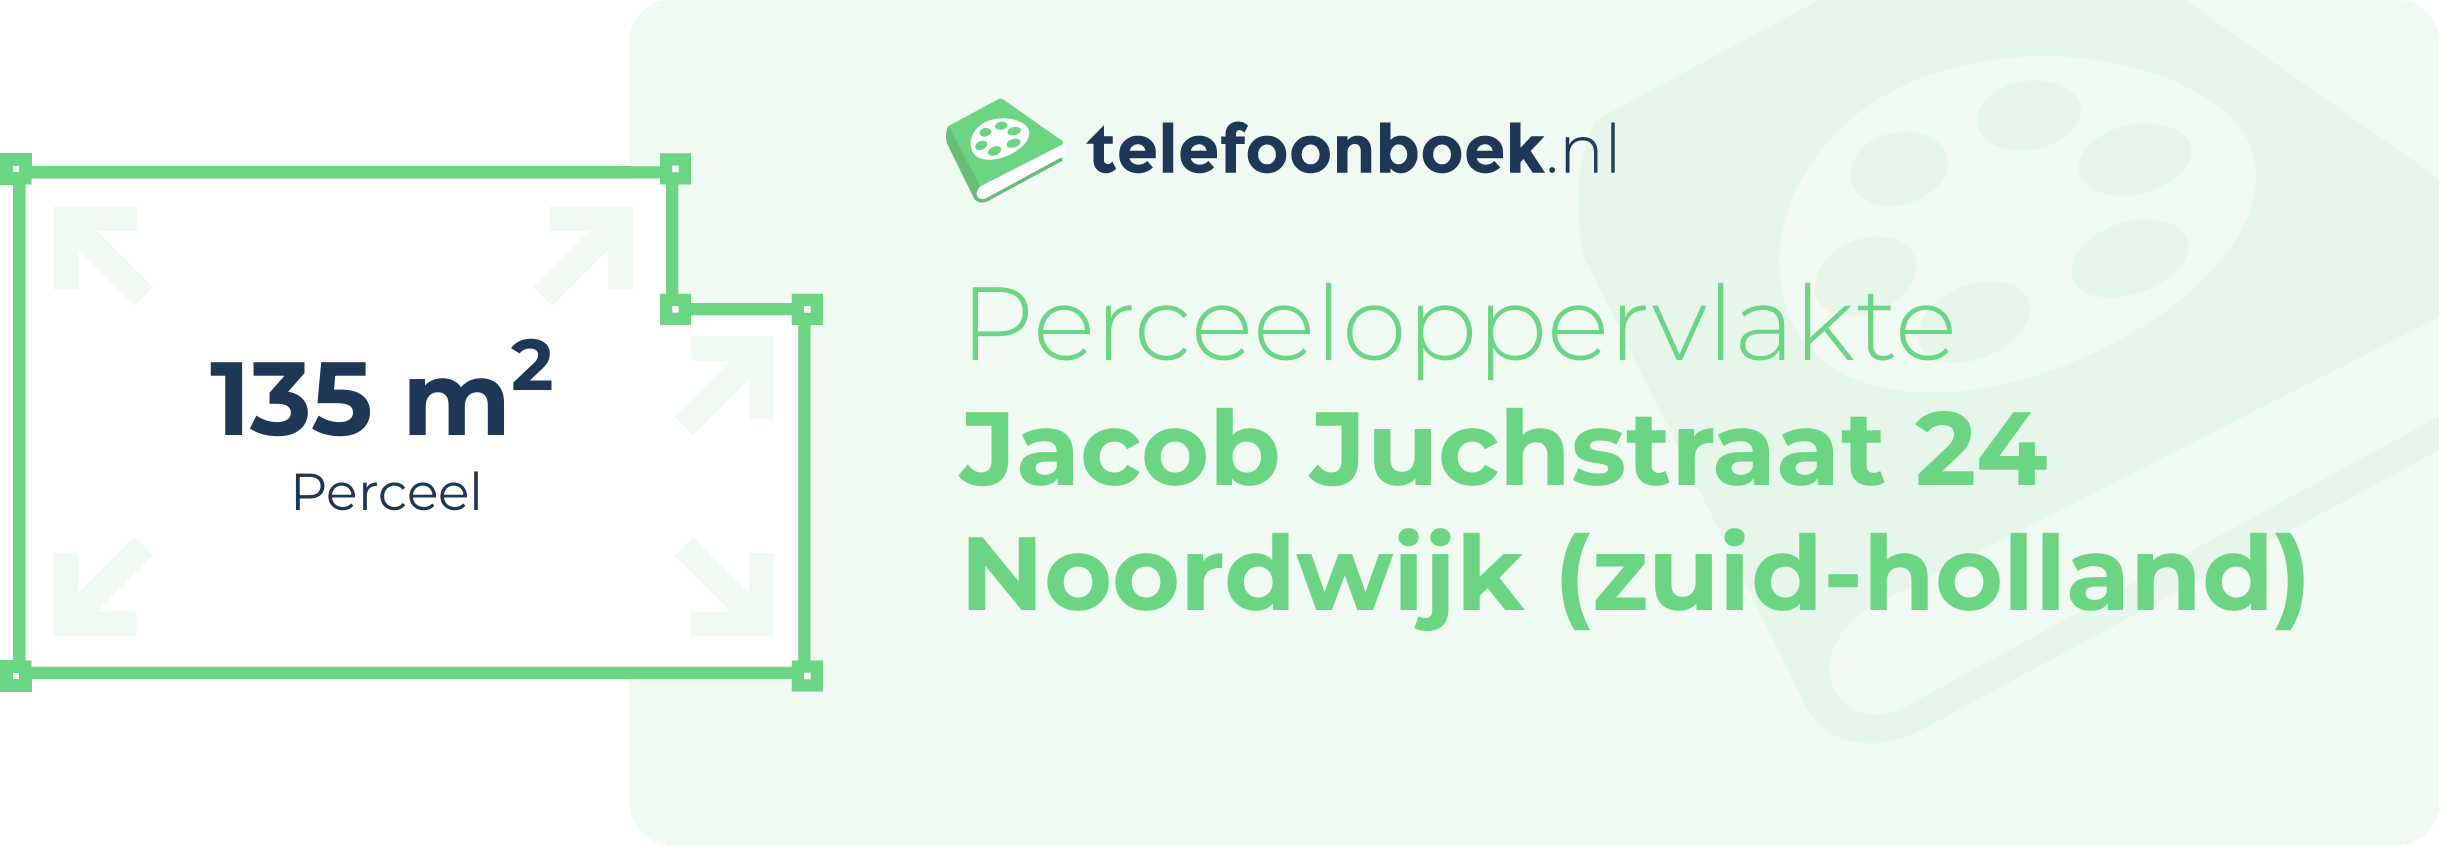 Perceeloppervlakte Jacob Juchstraat 24 Noordwijk (Zuid-Holland)